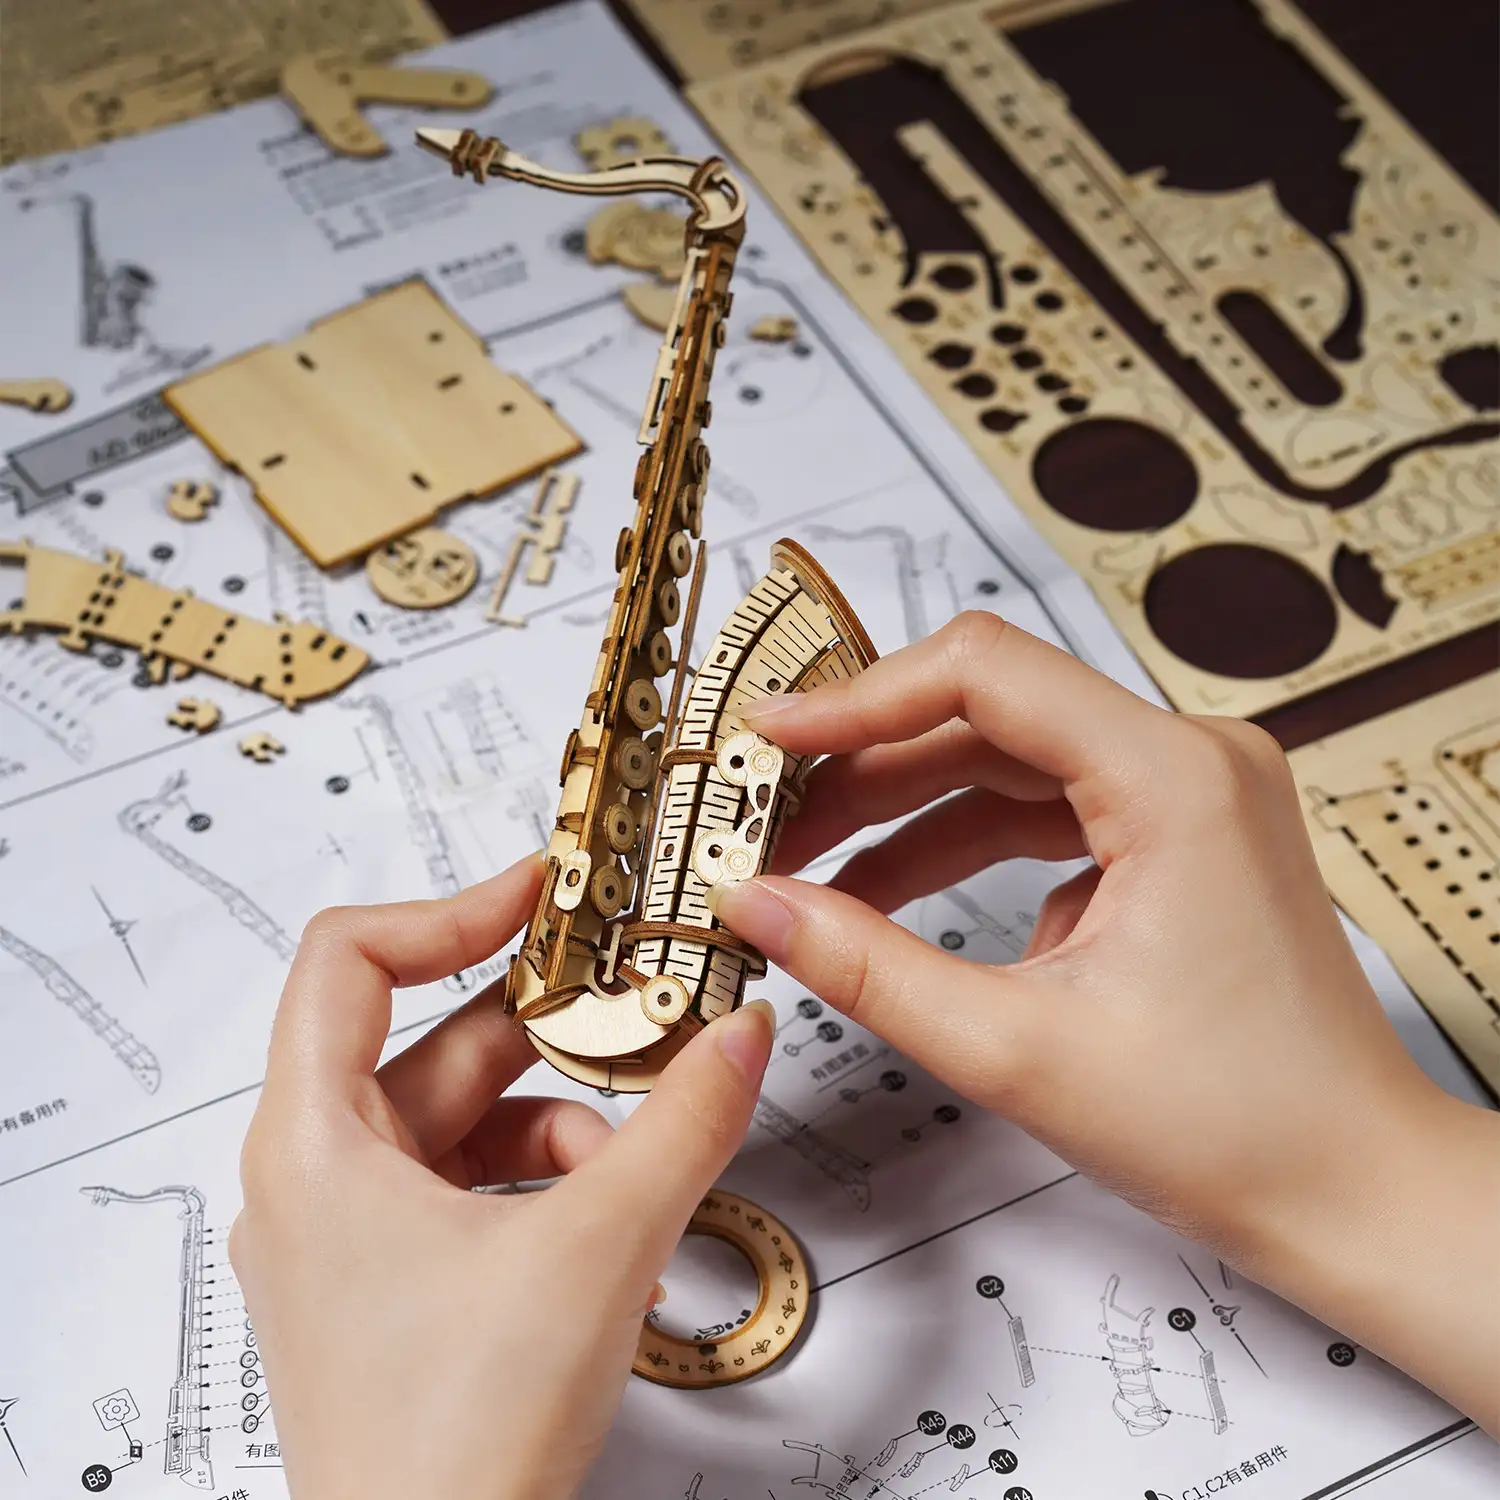 Saxofón maqueta 3D realista con gran detalle, 136 piezas.